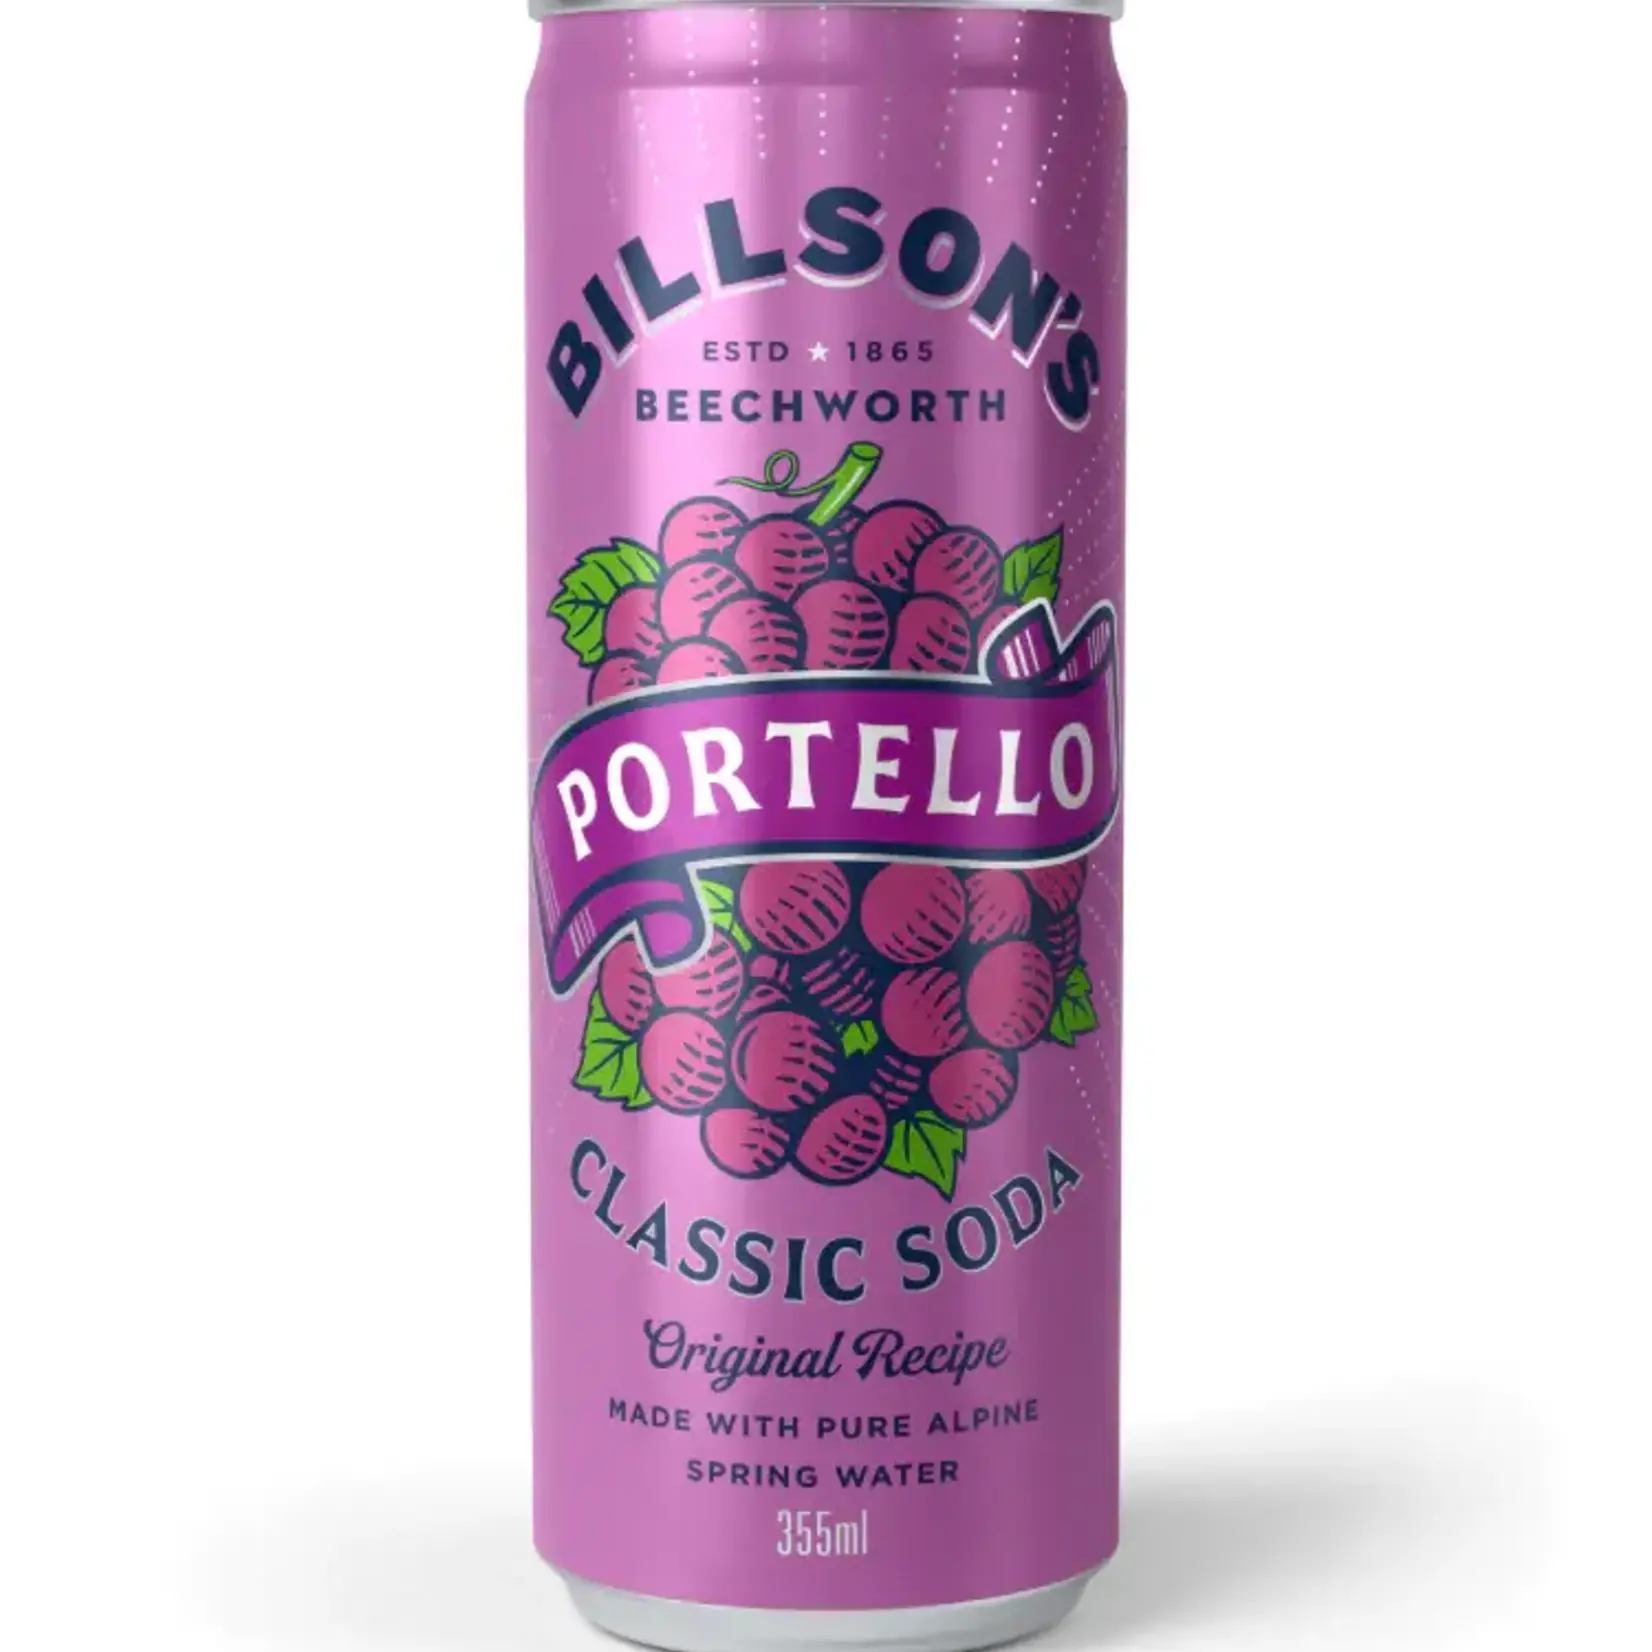 Classic Soda Portello 355ml Billson’s